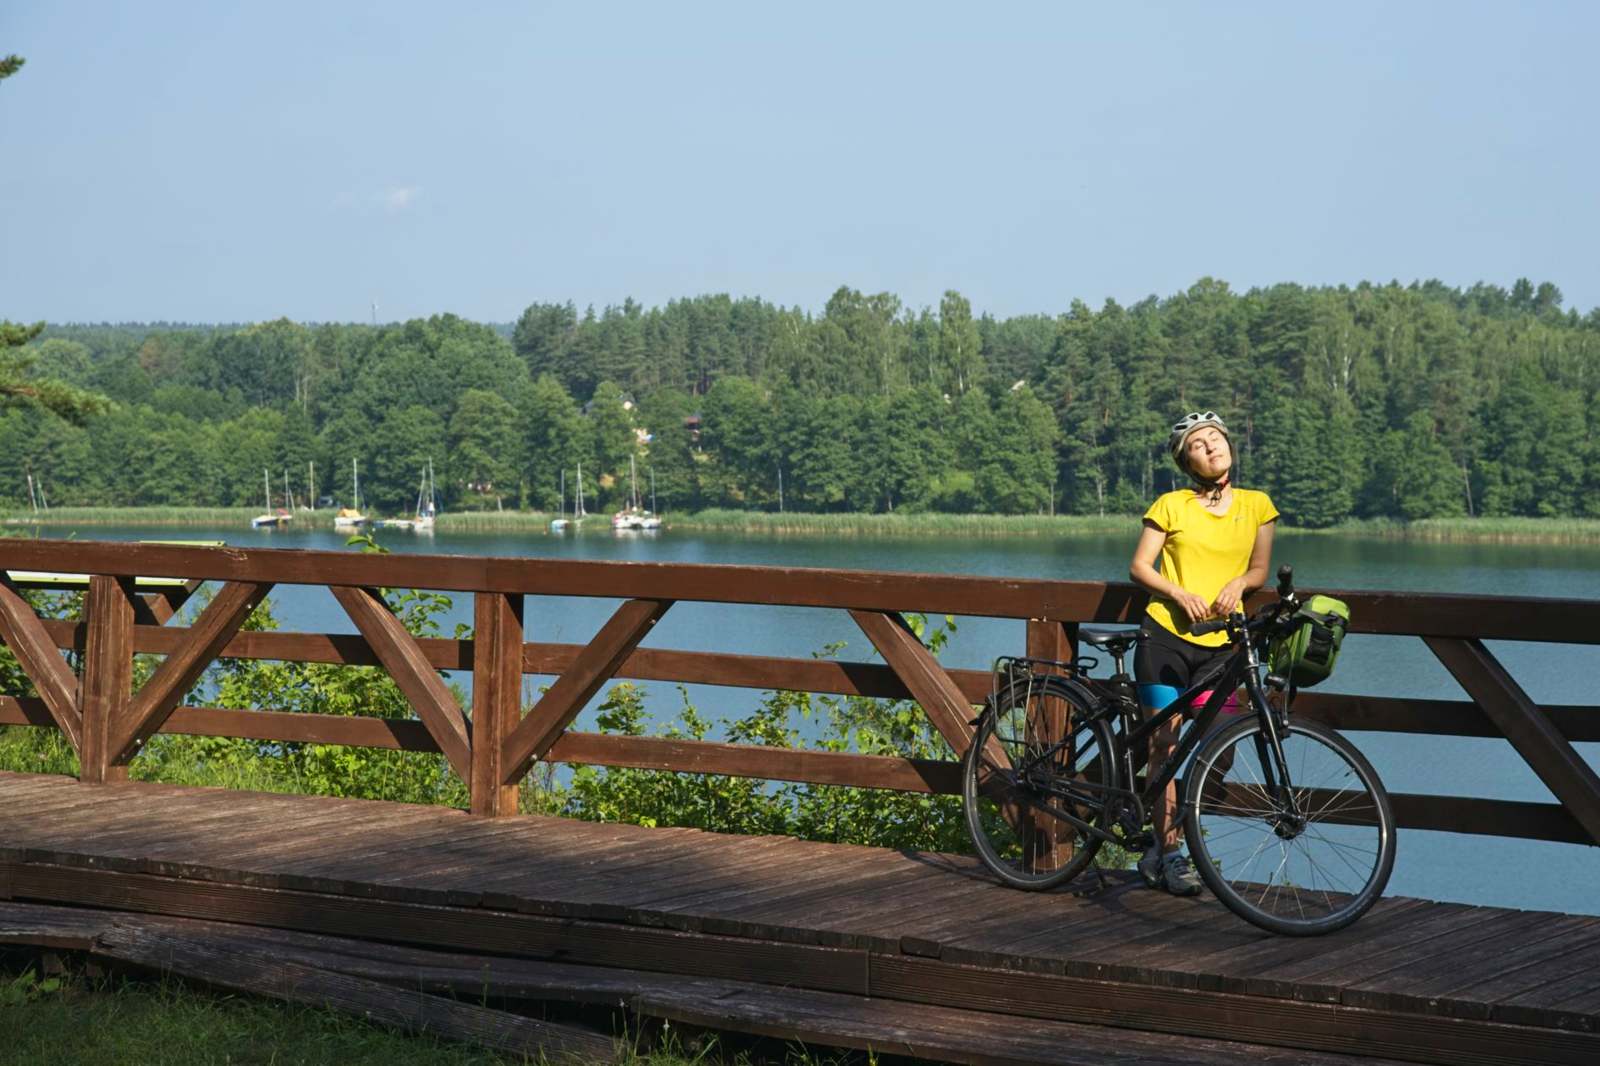 wigry lake biking suwalszczyzna on bike